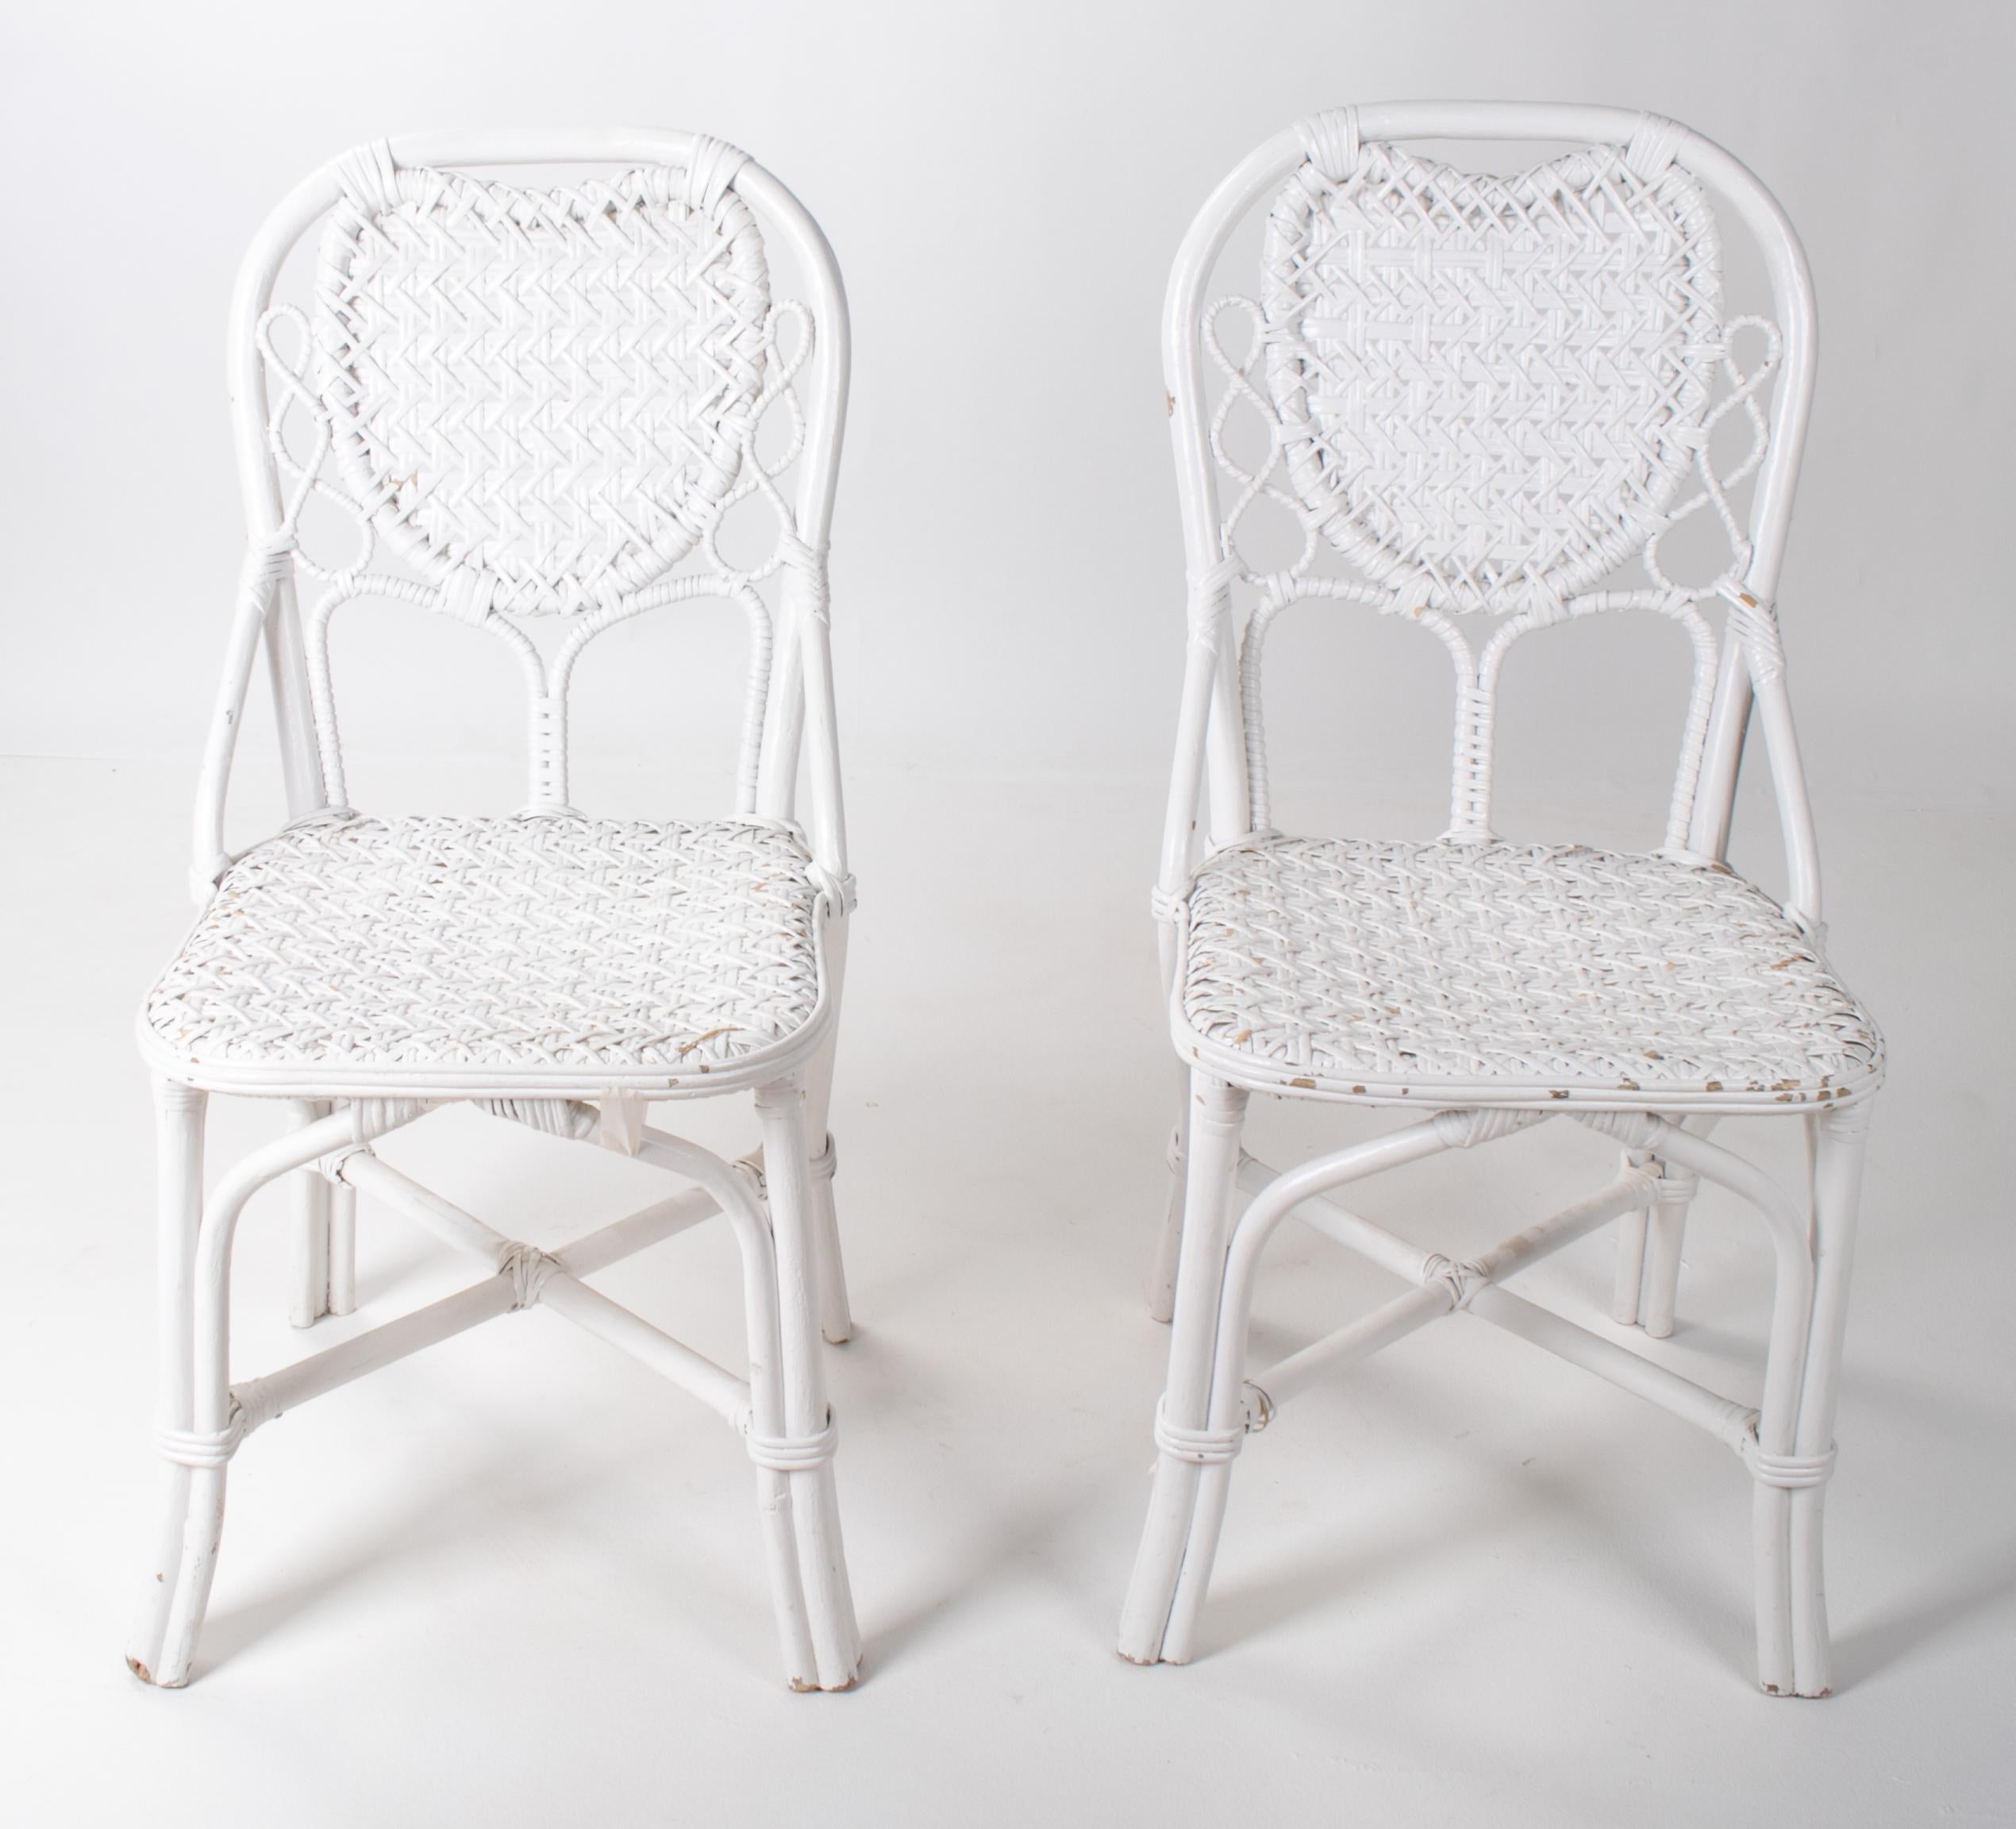 1970s pair of Spanish handmade white wicker wooden chairs.